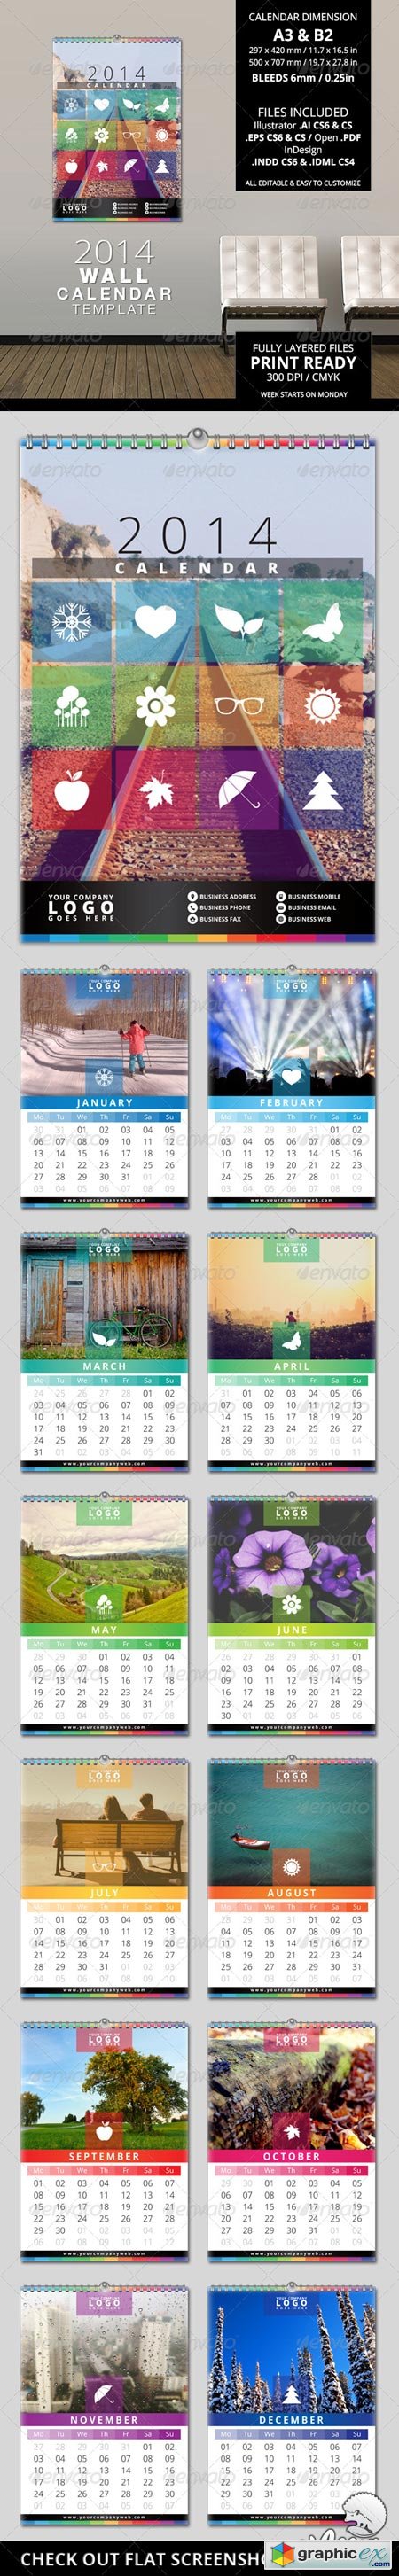 2014 Wall Calendar Template 6381628